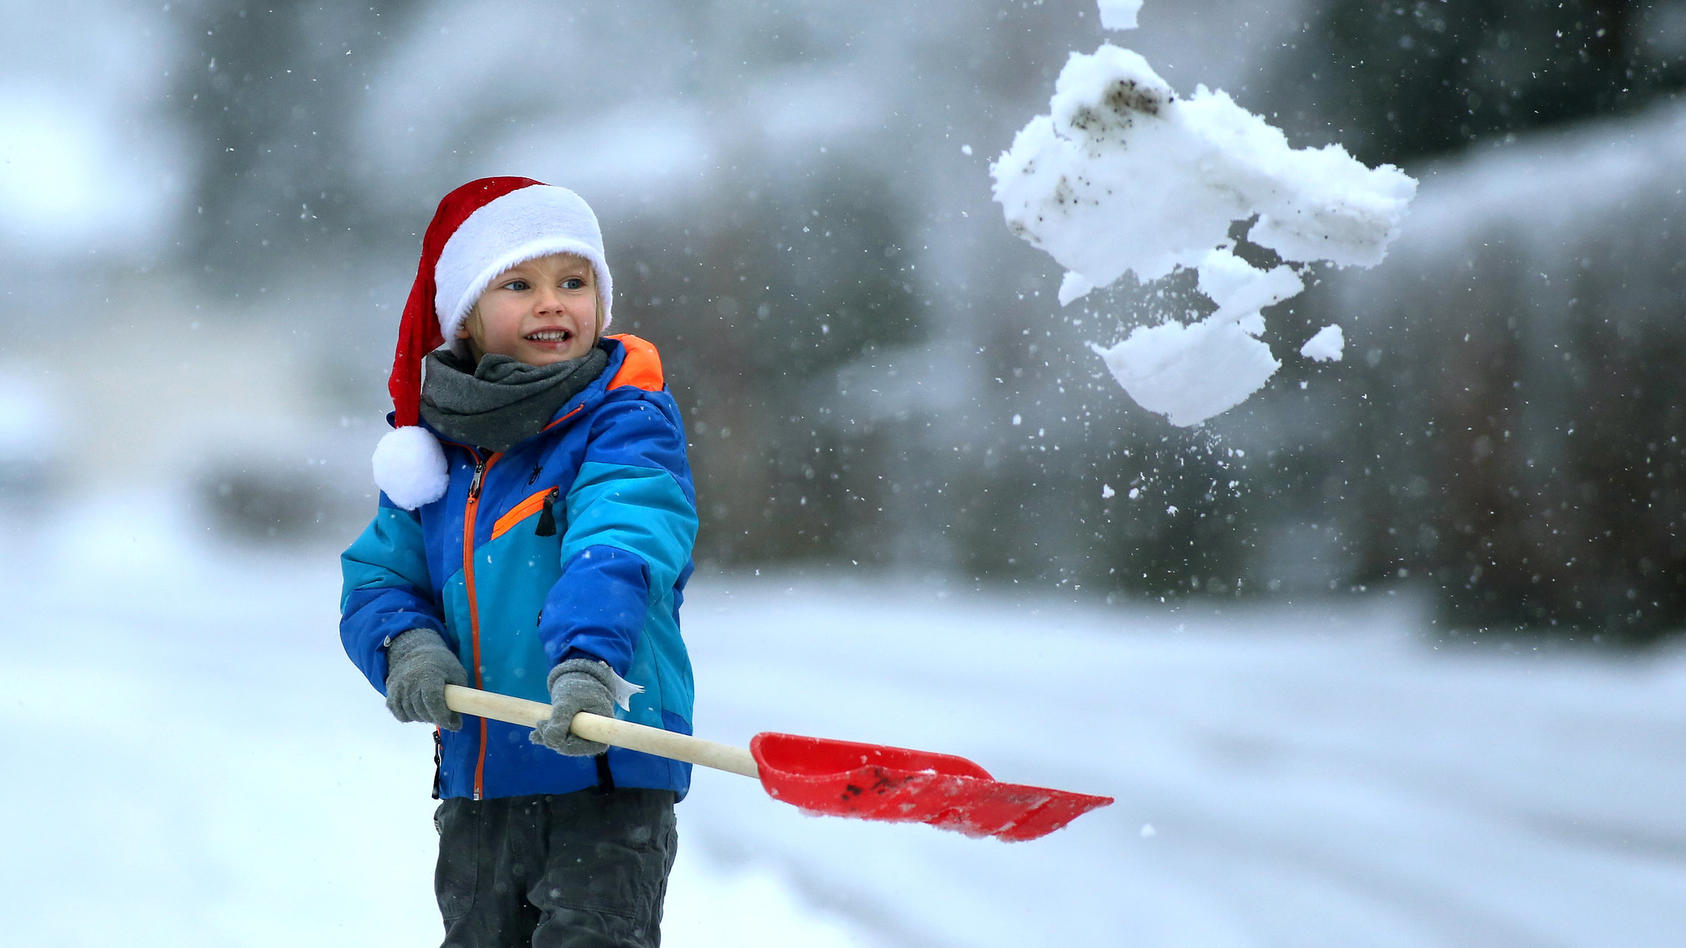 Weisse Weihnachten 2021 Wie Gross Sind Die Chancen Fur Schnee In Deutschland Am 24 Dezember